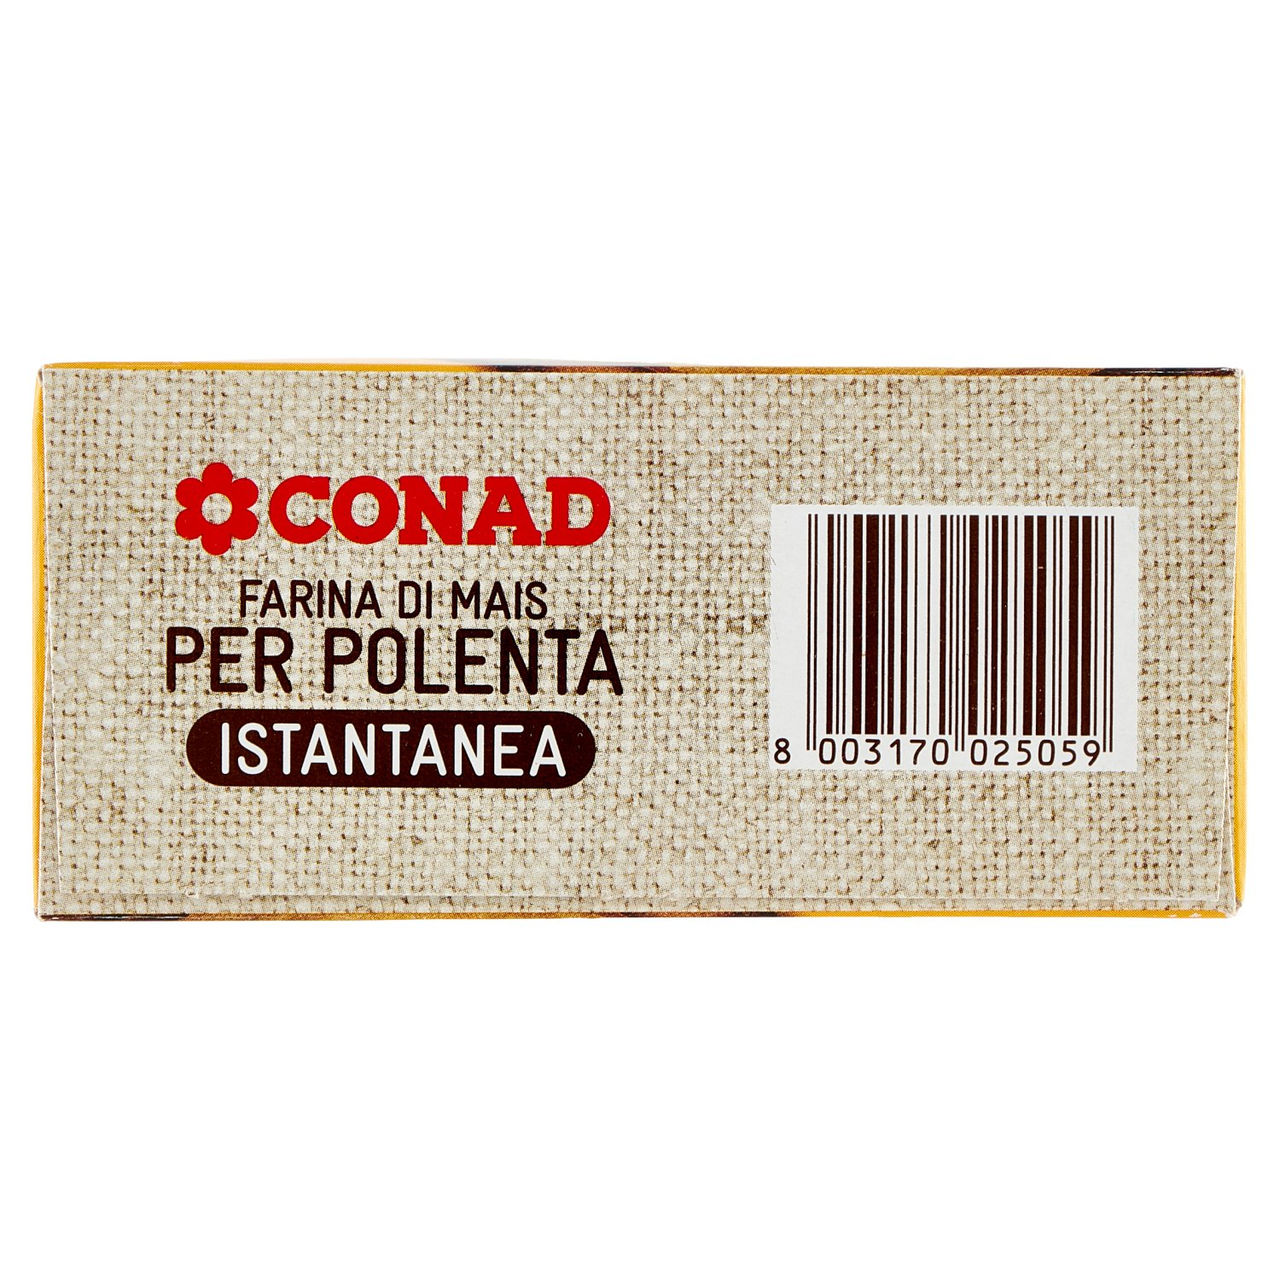 Farina di Mais per Polenta Istantanea 375 g Conad